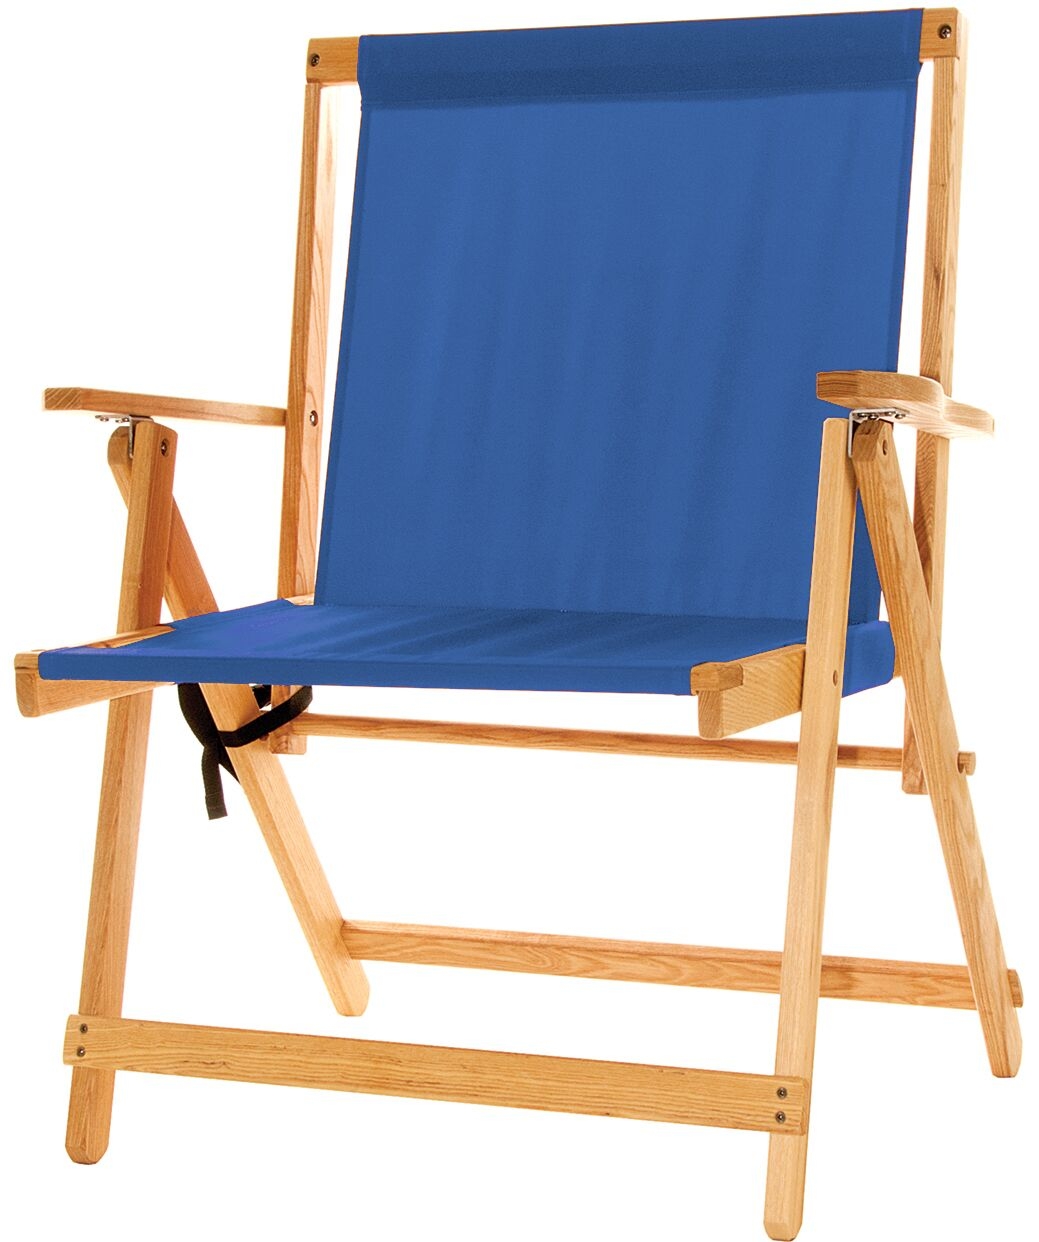 XL Deck Beach Chair